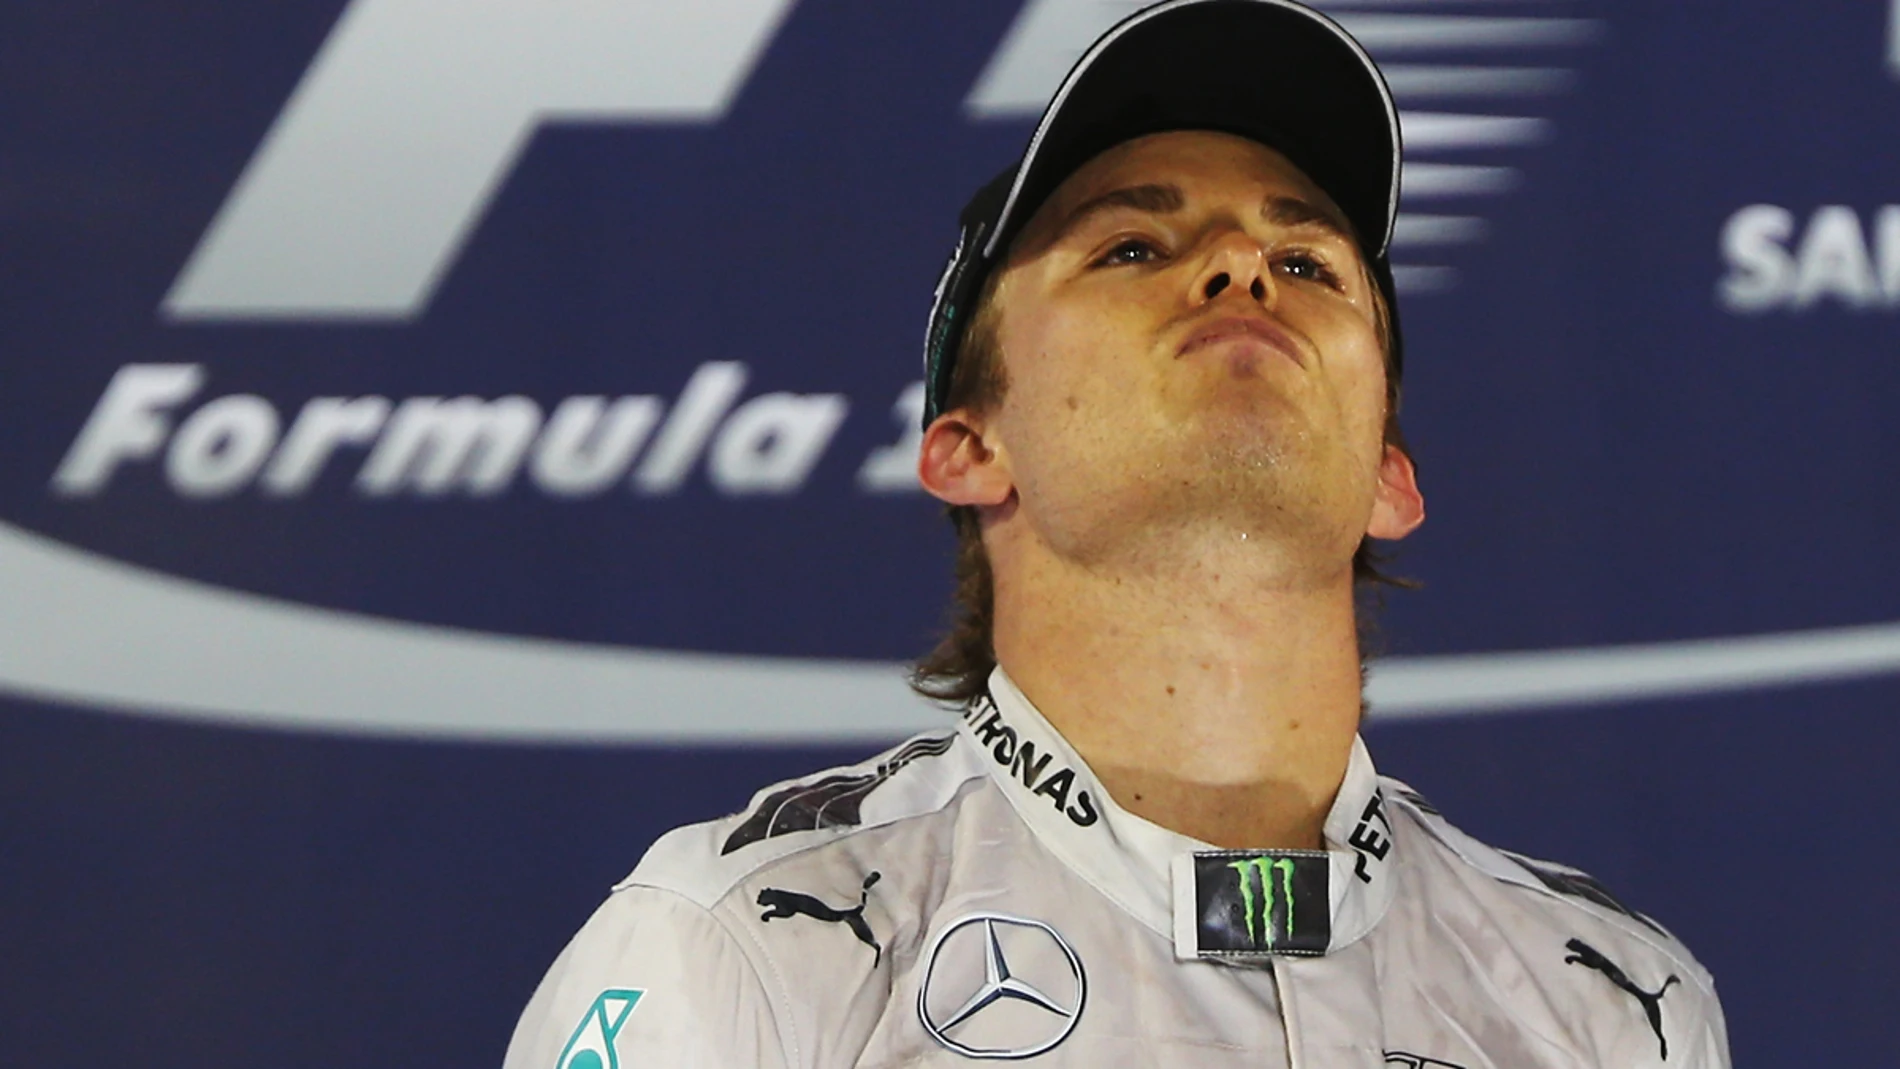 Rosberg, en el podio bareiní